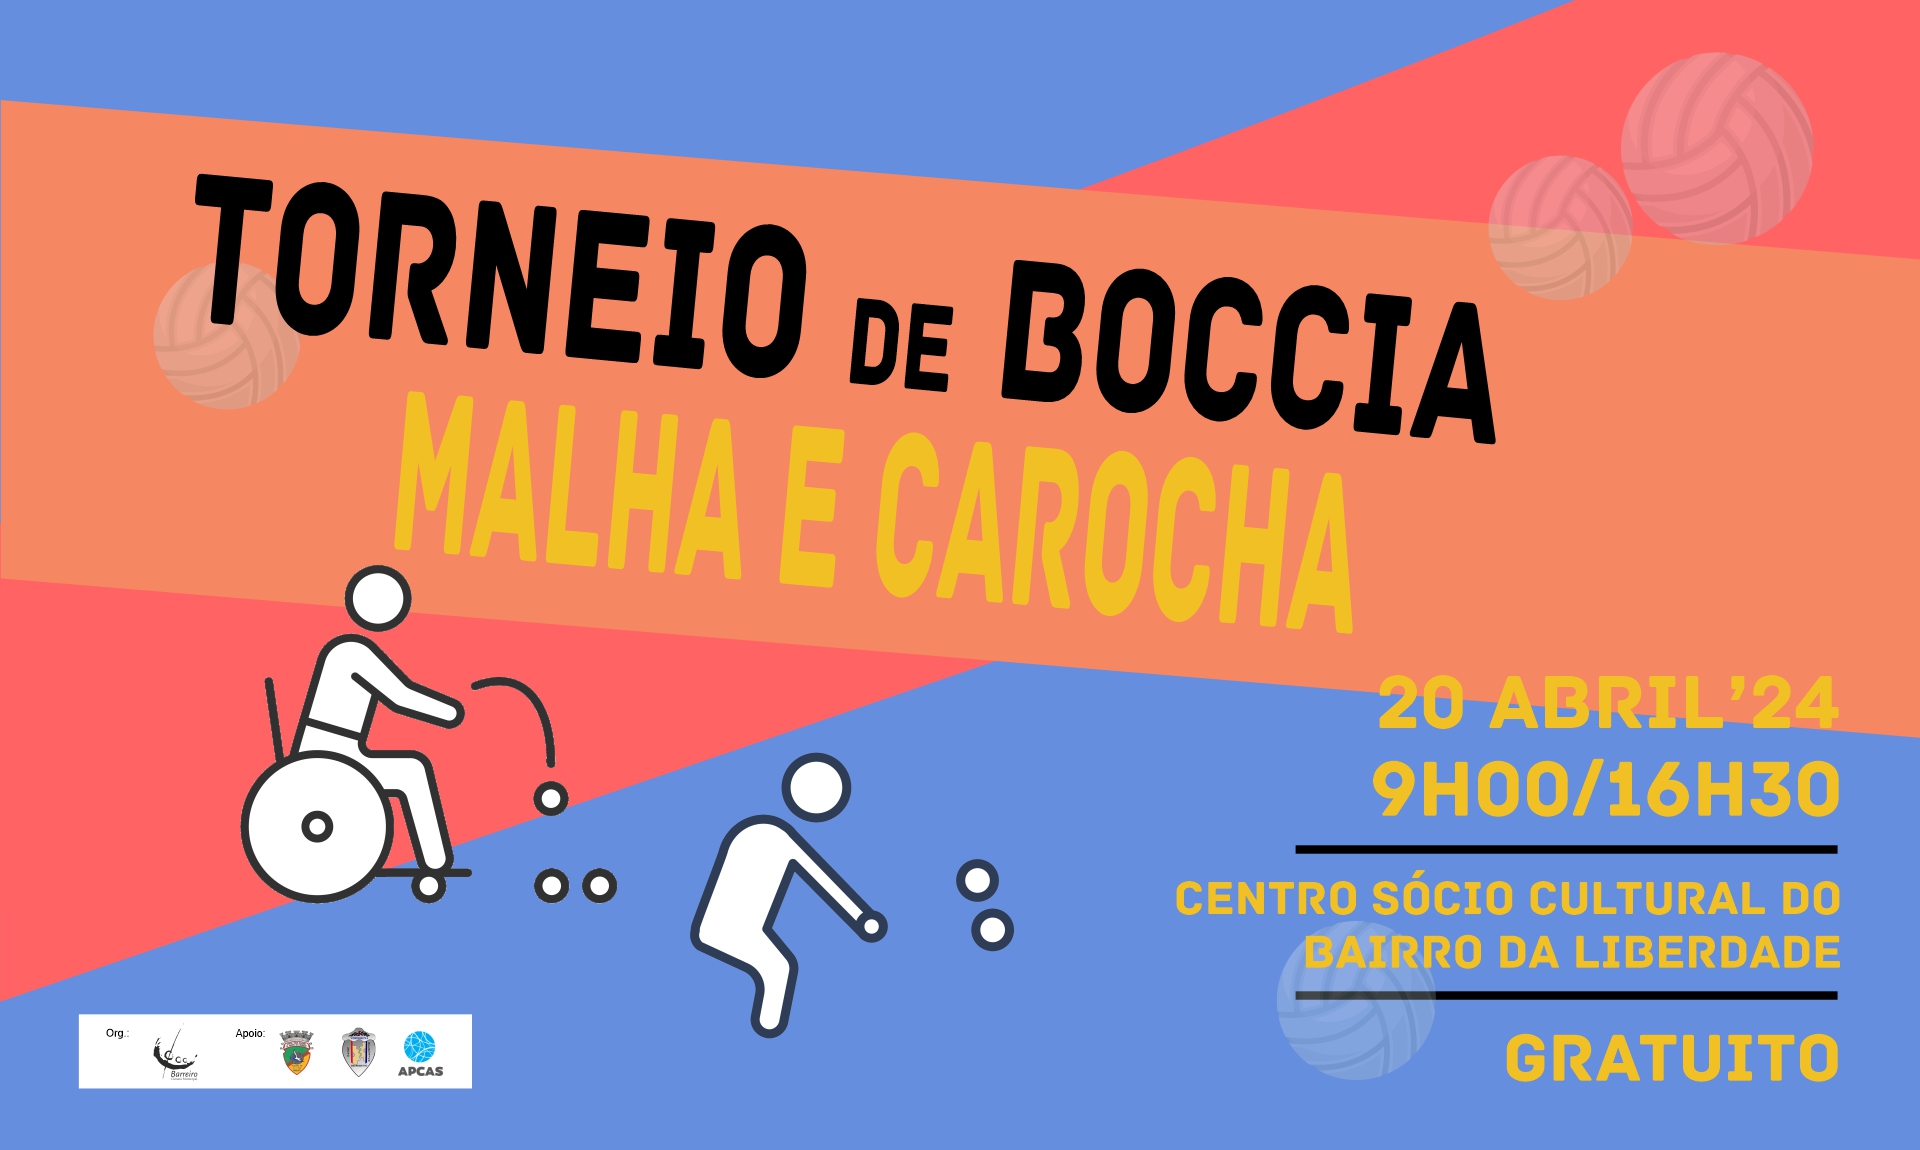 Torneio de Boccia, Malha e Carocha | 20 abril | Centro Sócio Cultural Bairro da Liberdade (Cartaz)